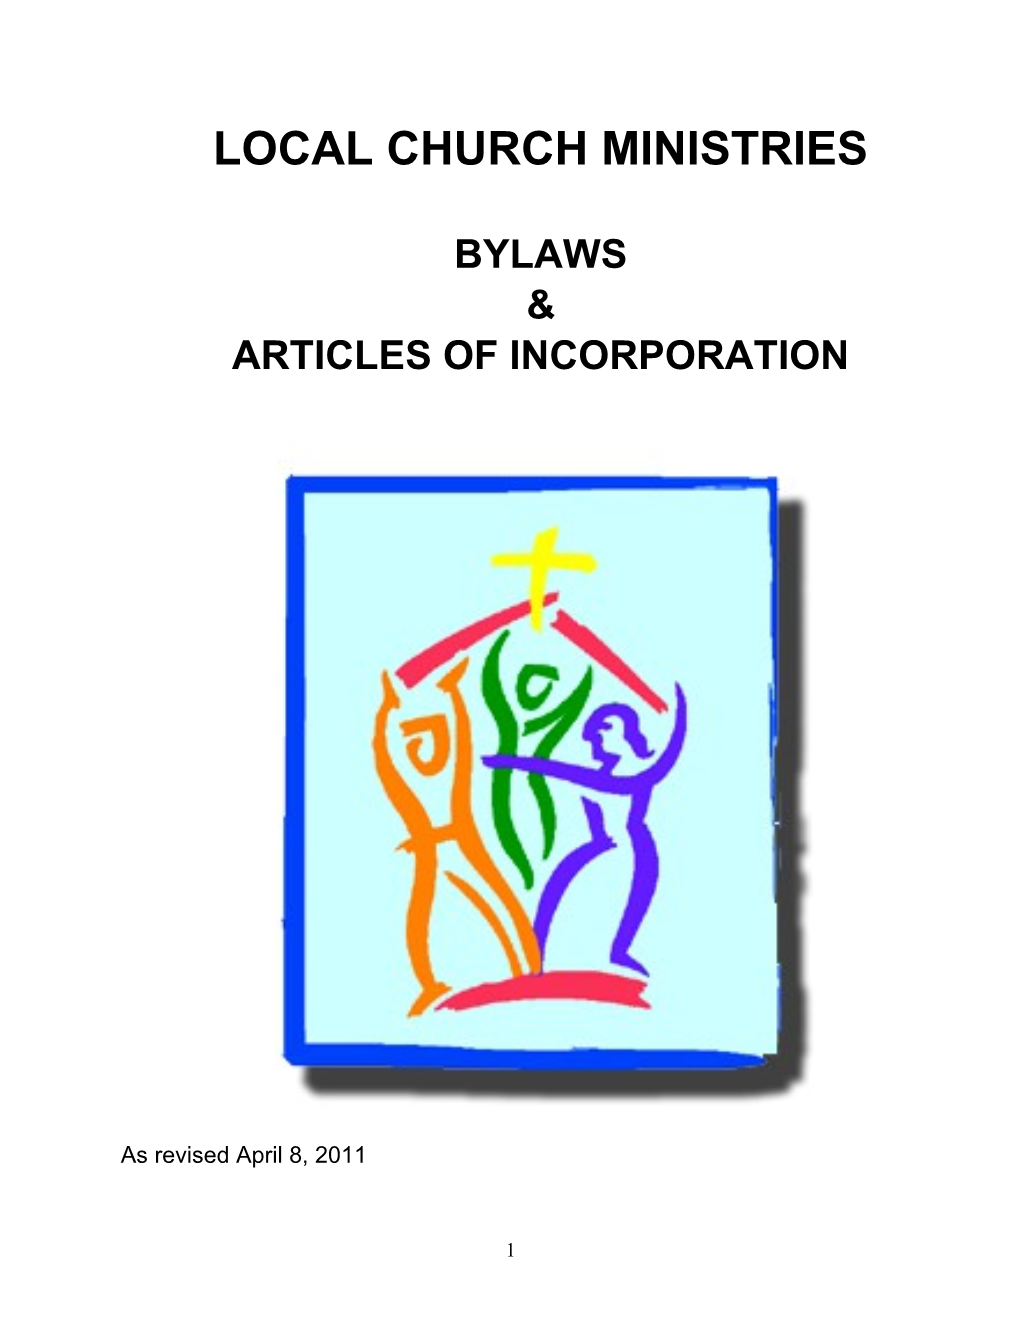 Local Church Ministries